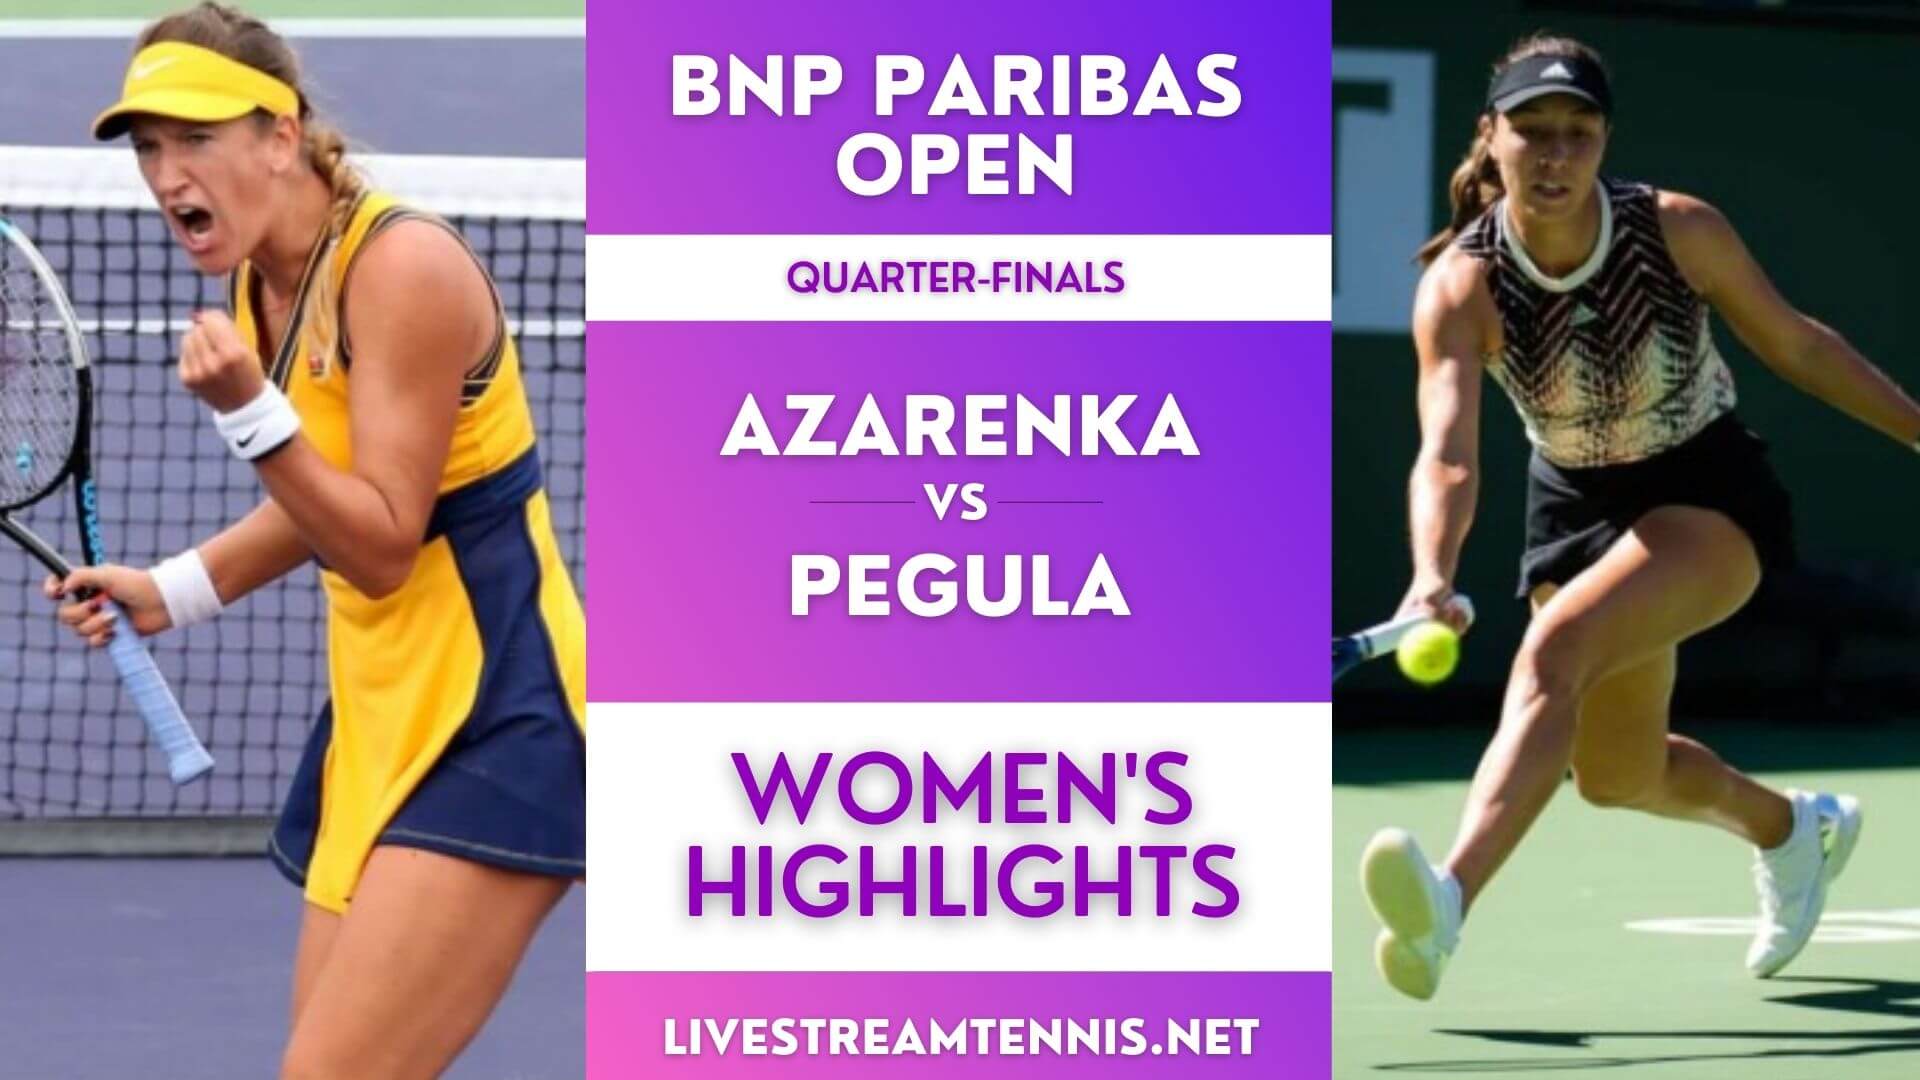 BNP Paribas Open Women Quarter Final 2 Highlights 2021